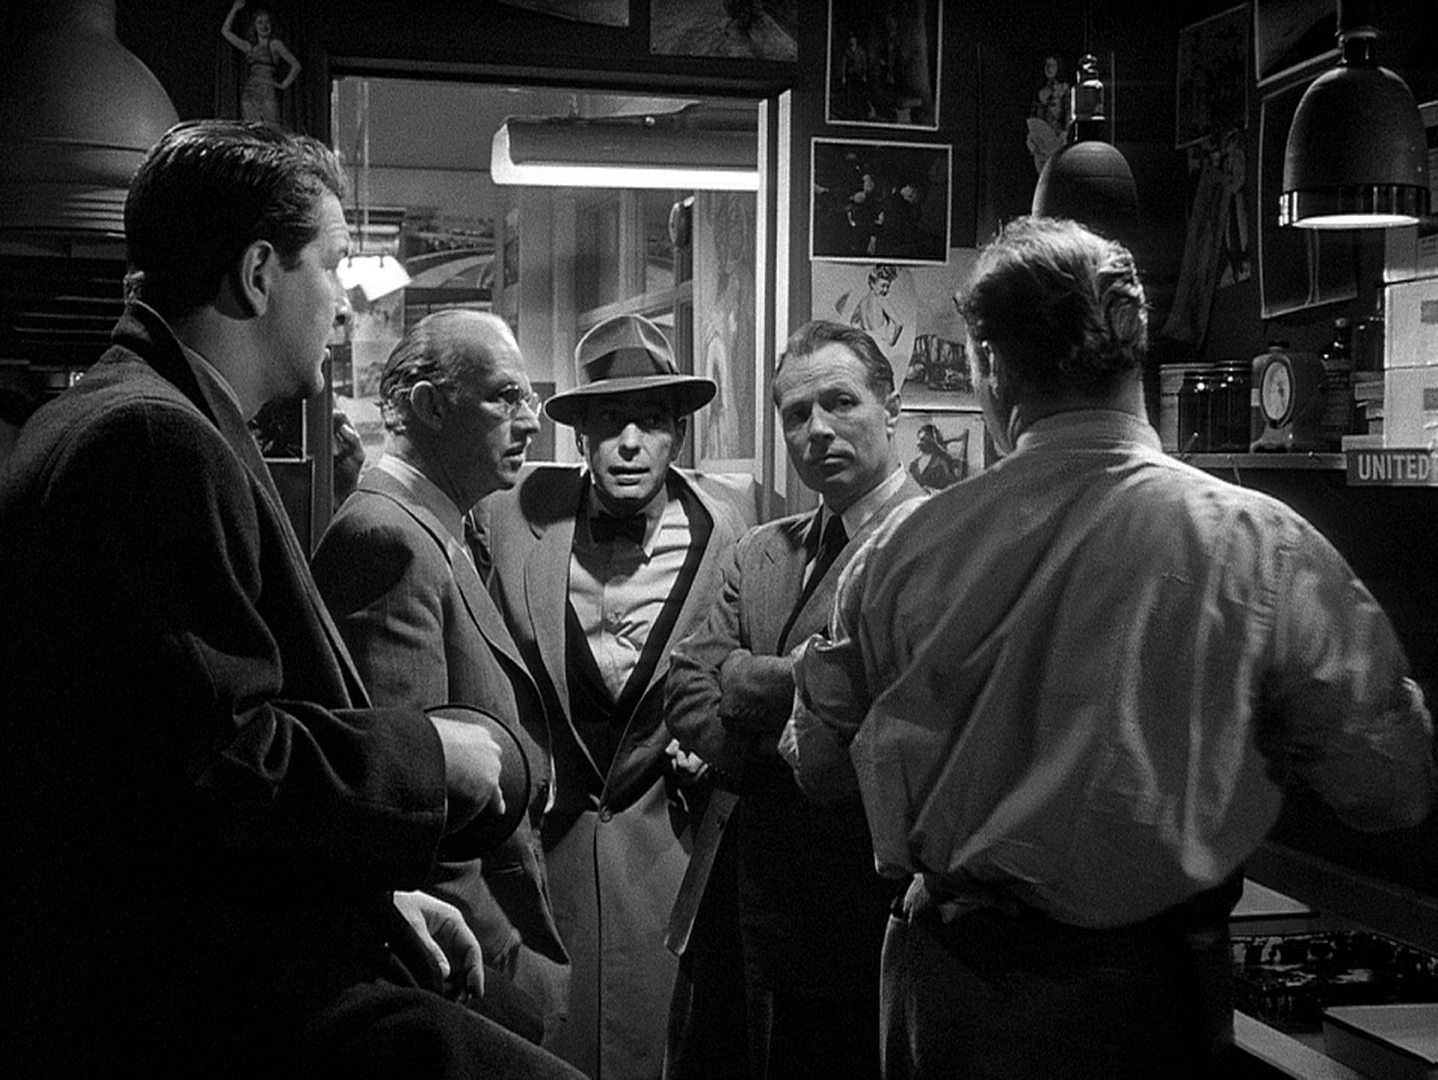 Schwarz-Weiß-Szene: Humphrey Bogart in Noir-Pose mit Mantel und Hut als Chefredakteur in einem kleinen Redaktionsbüro im Gespräch mit vier Mitarbeitern.